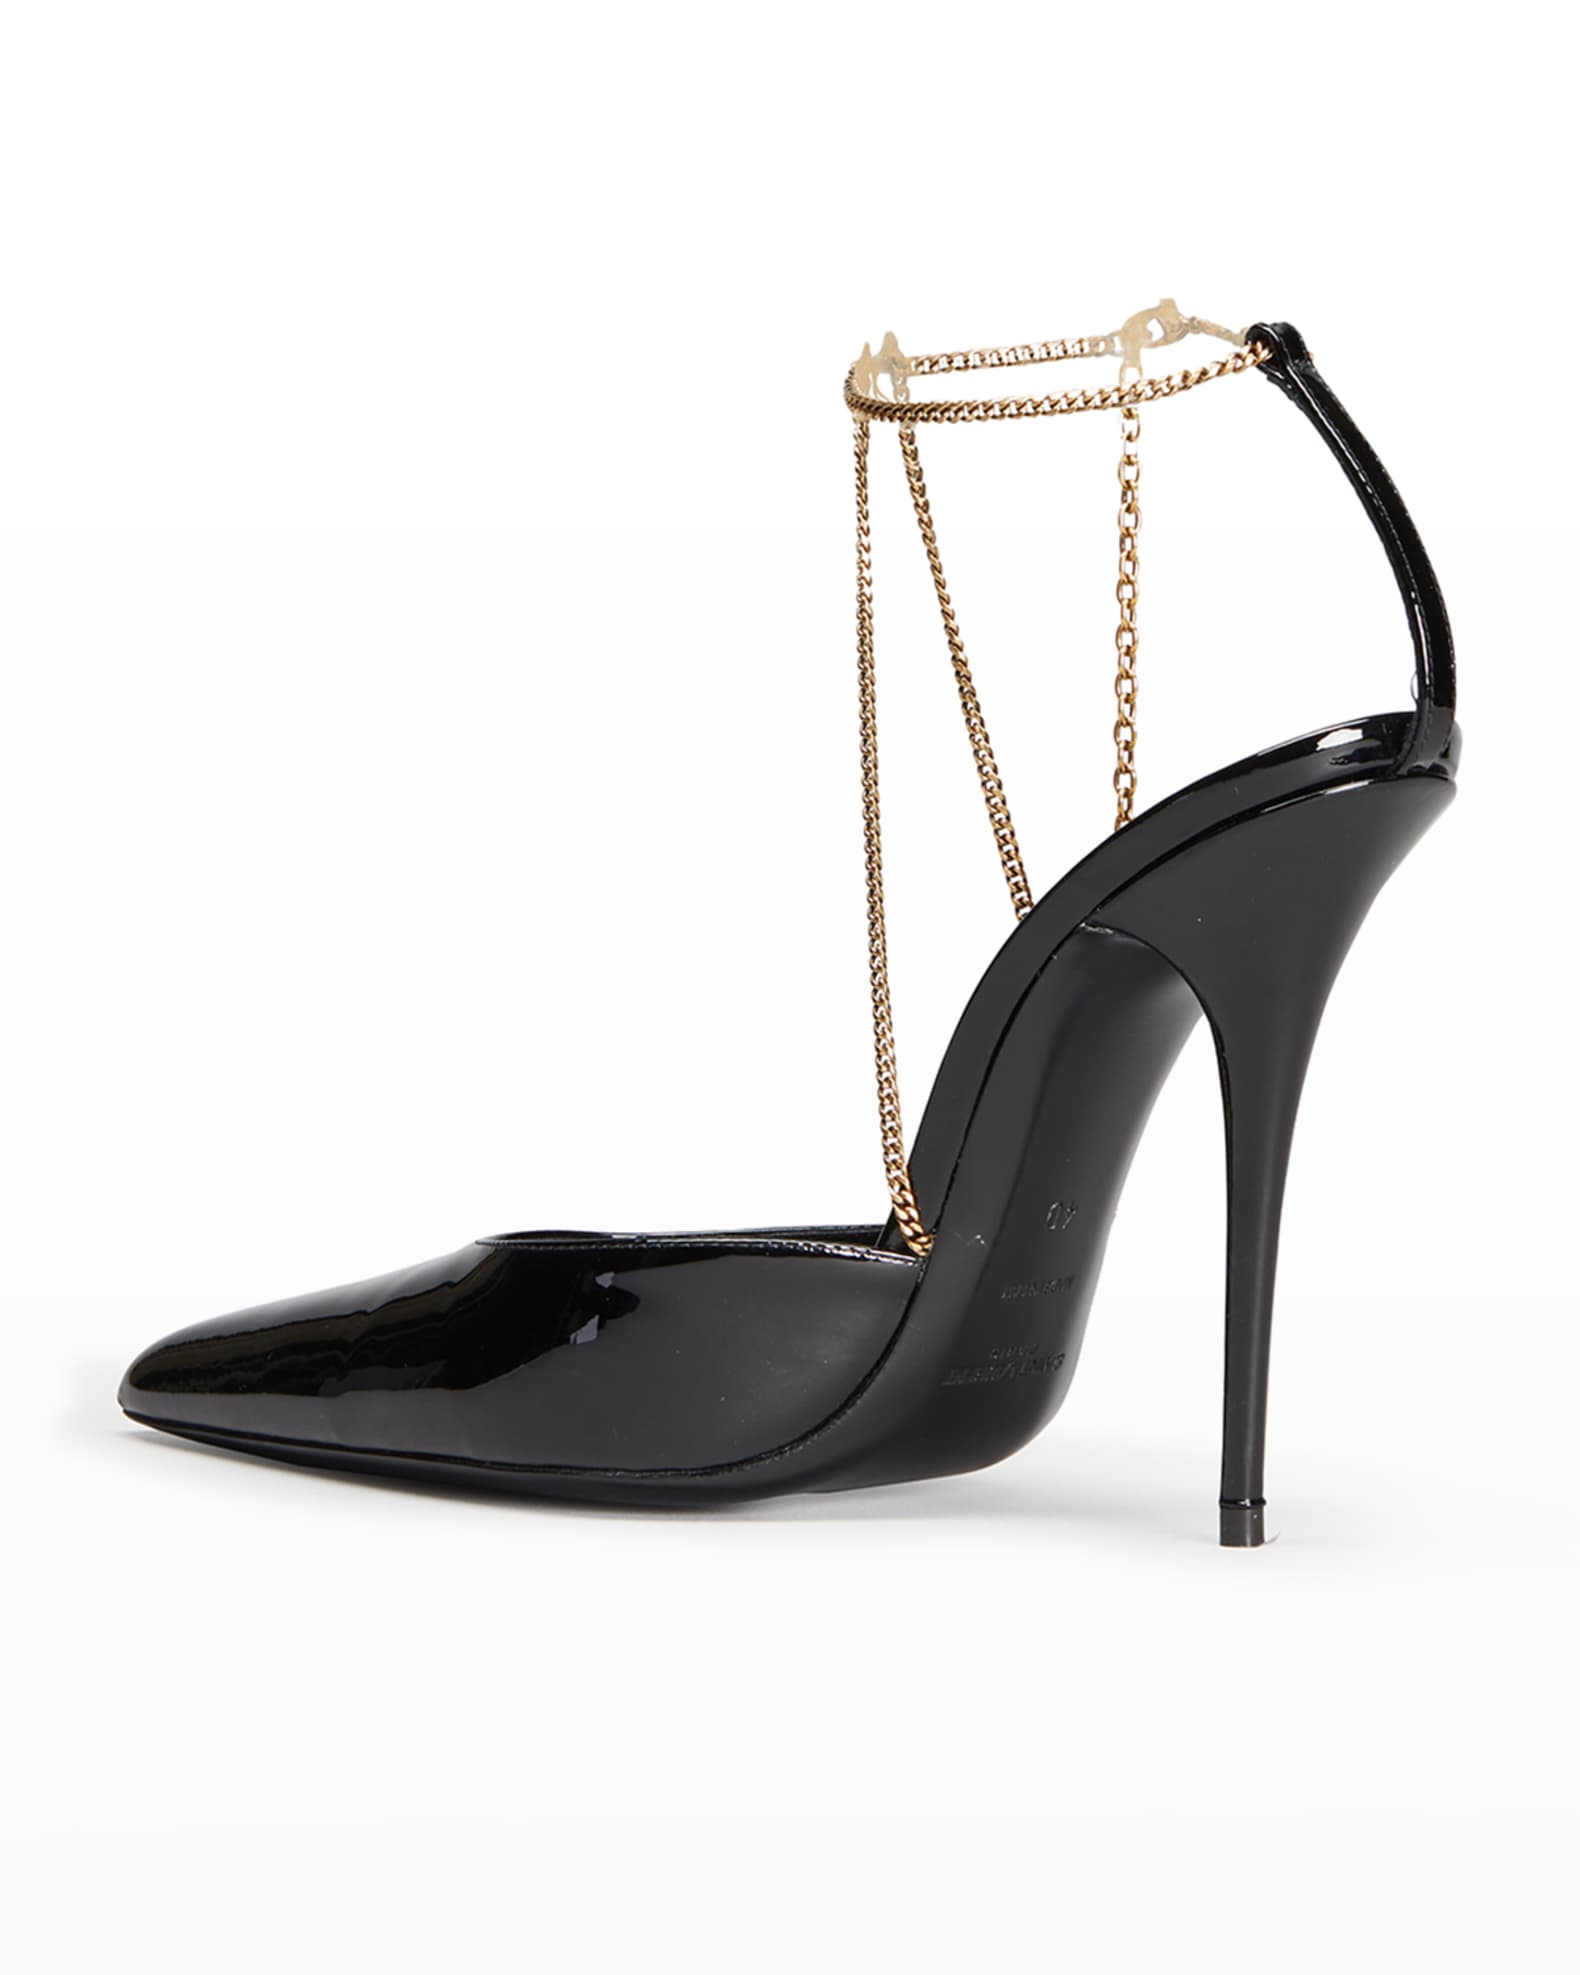 Saint Laurent Kayla Patent Ankle-Chain Pumps | Neiman Marcus